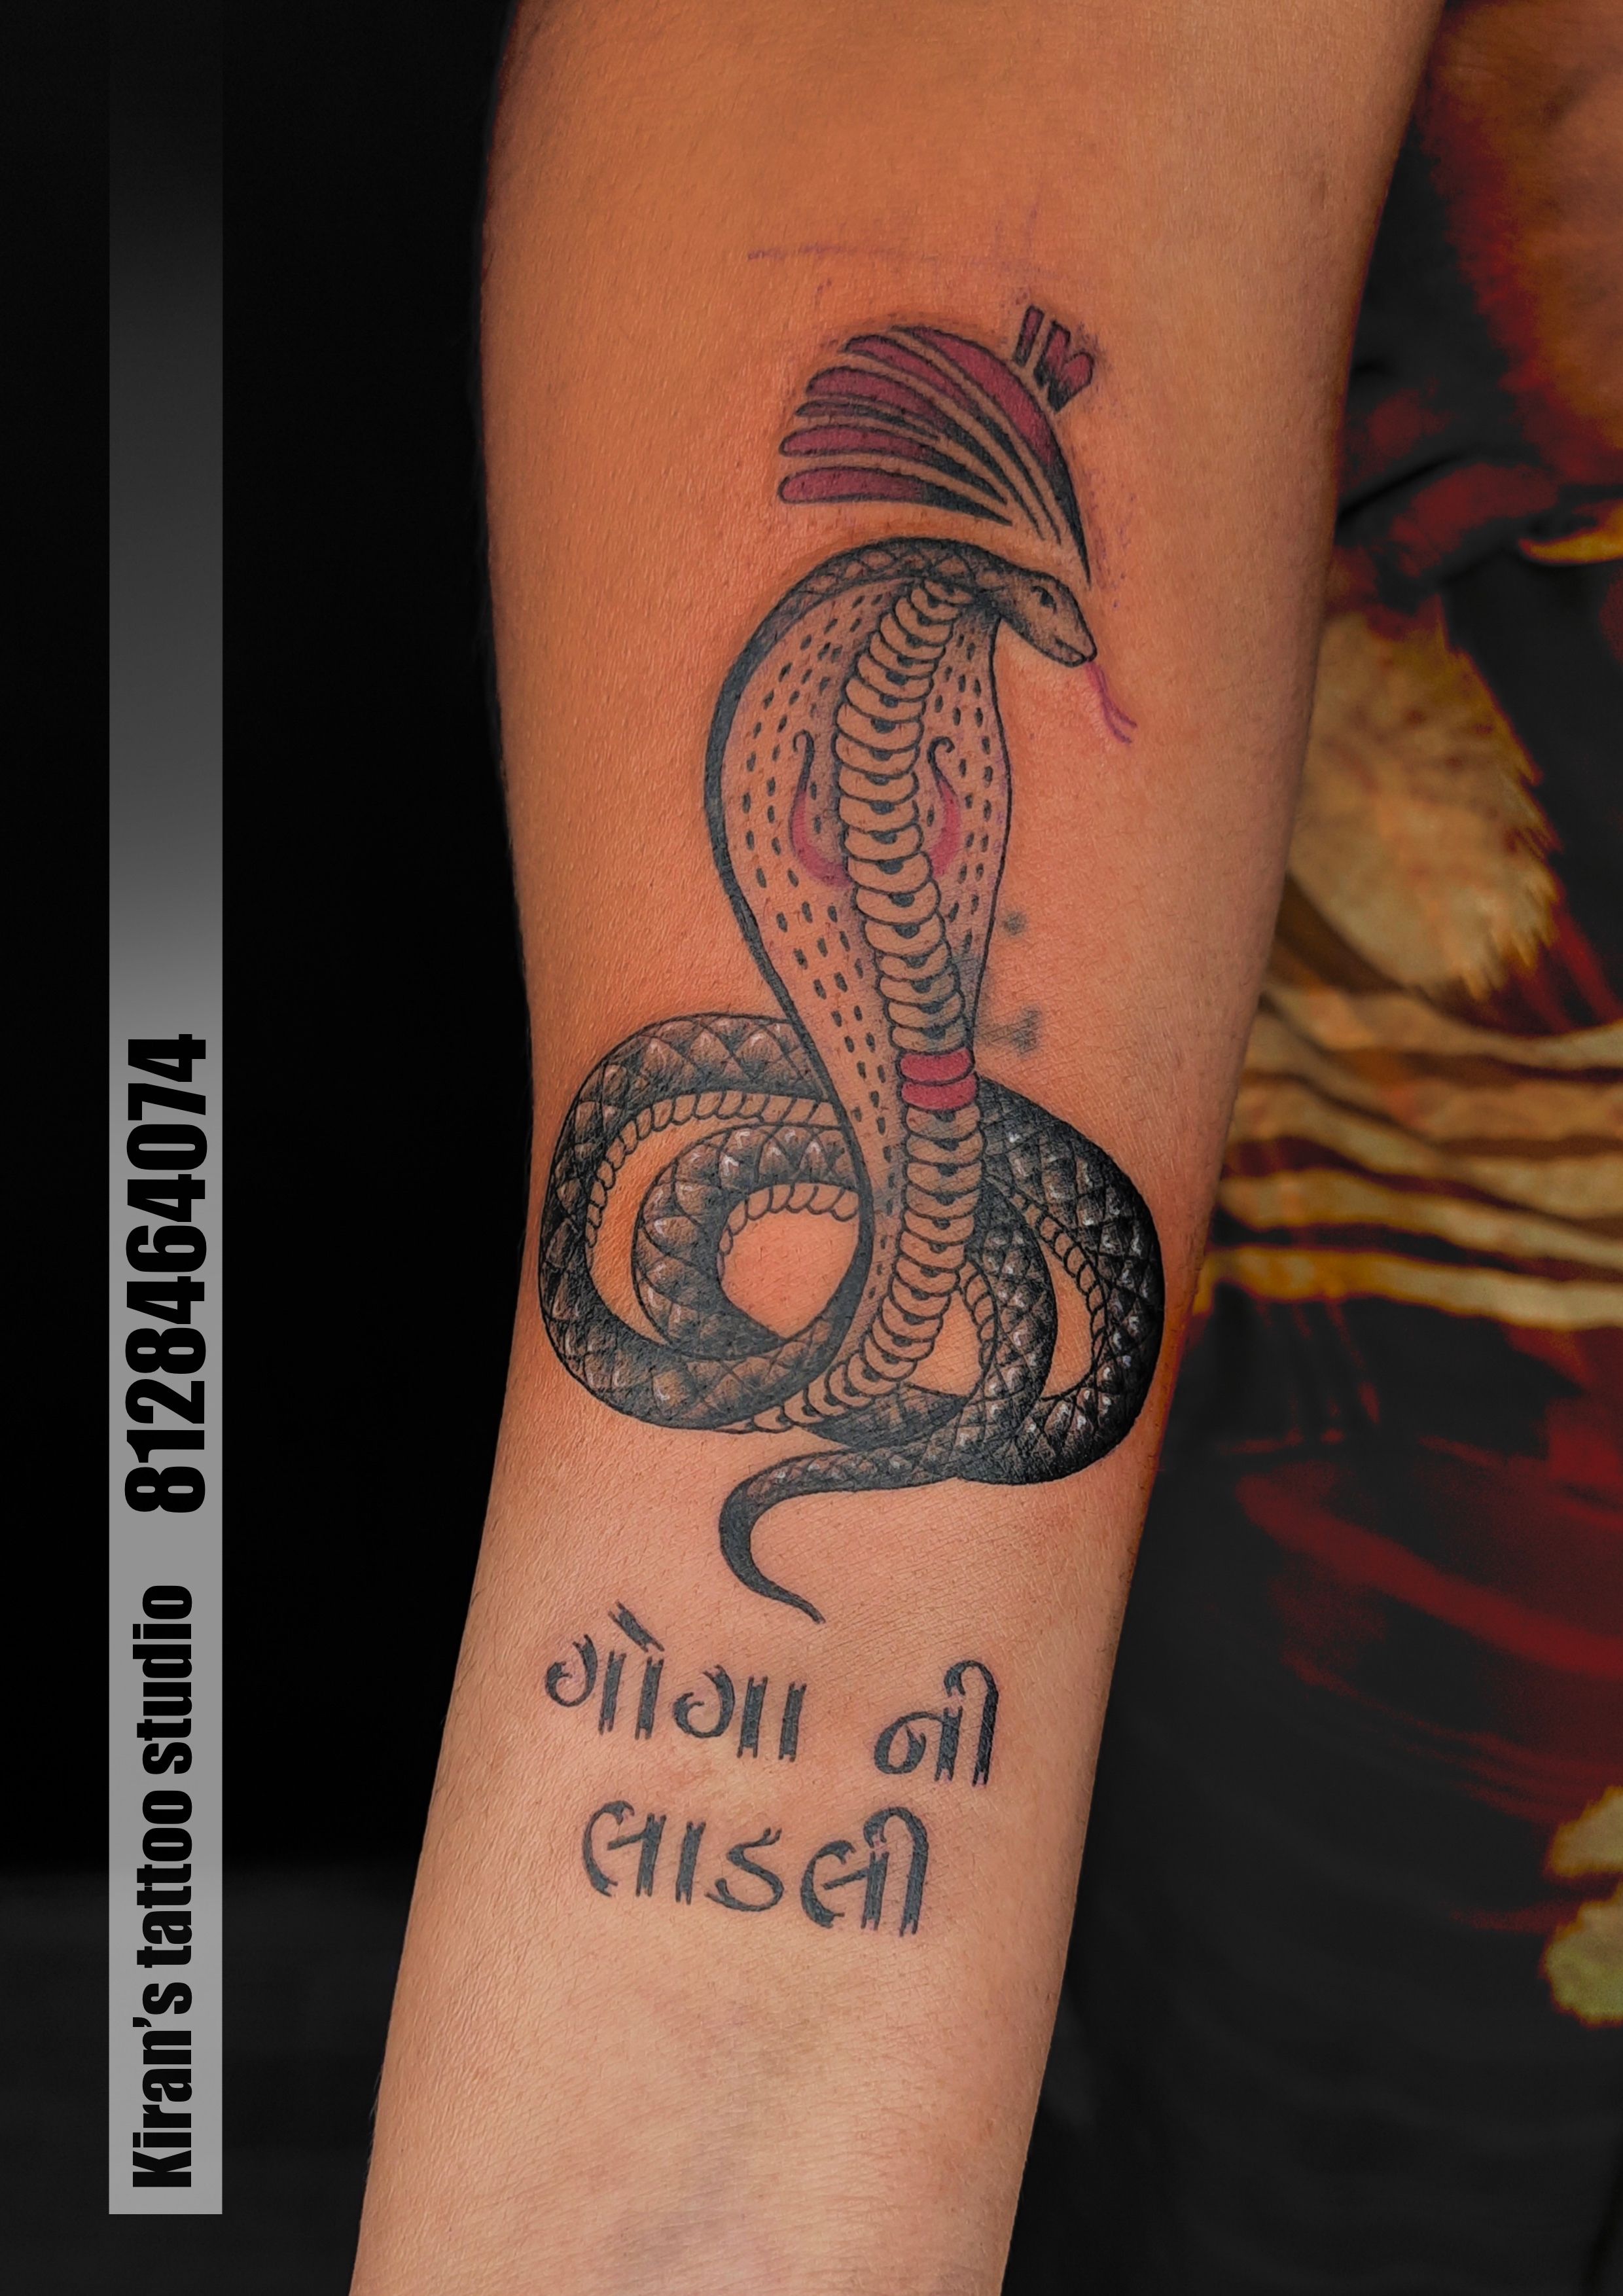 Goga maharaj tattoo |Goga tattoo |Jay goga tattoo |Jay goga maharaj tattoo  | Tattoos, Star tattoos, Tattoo images